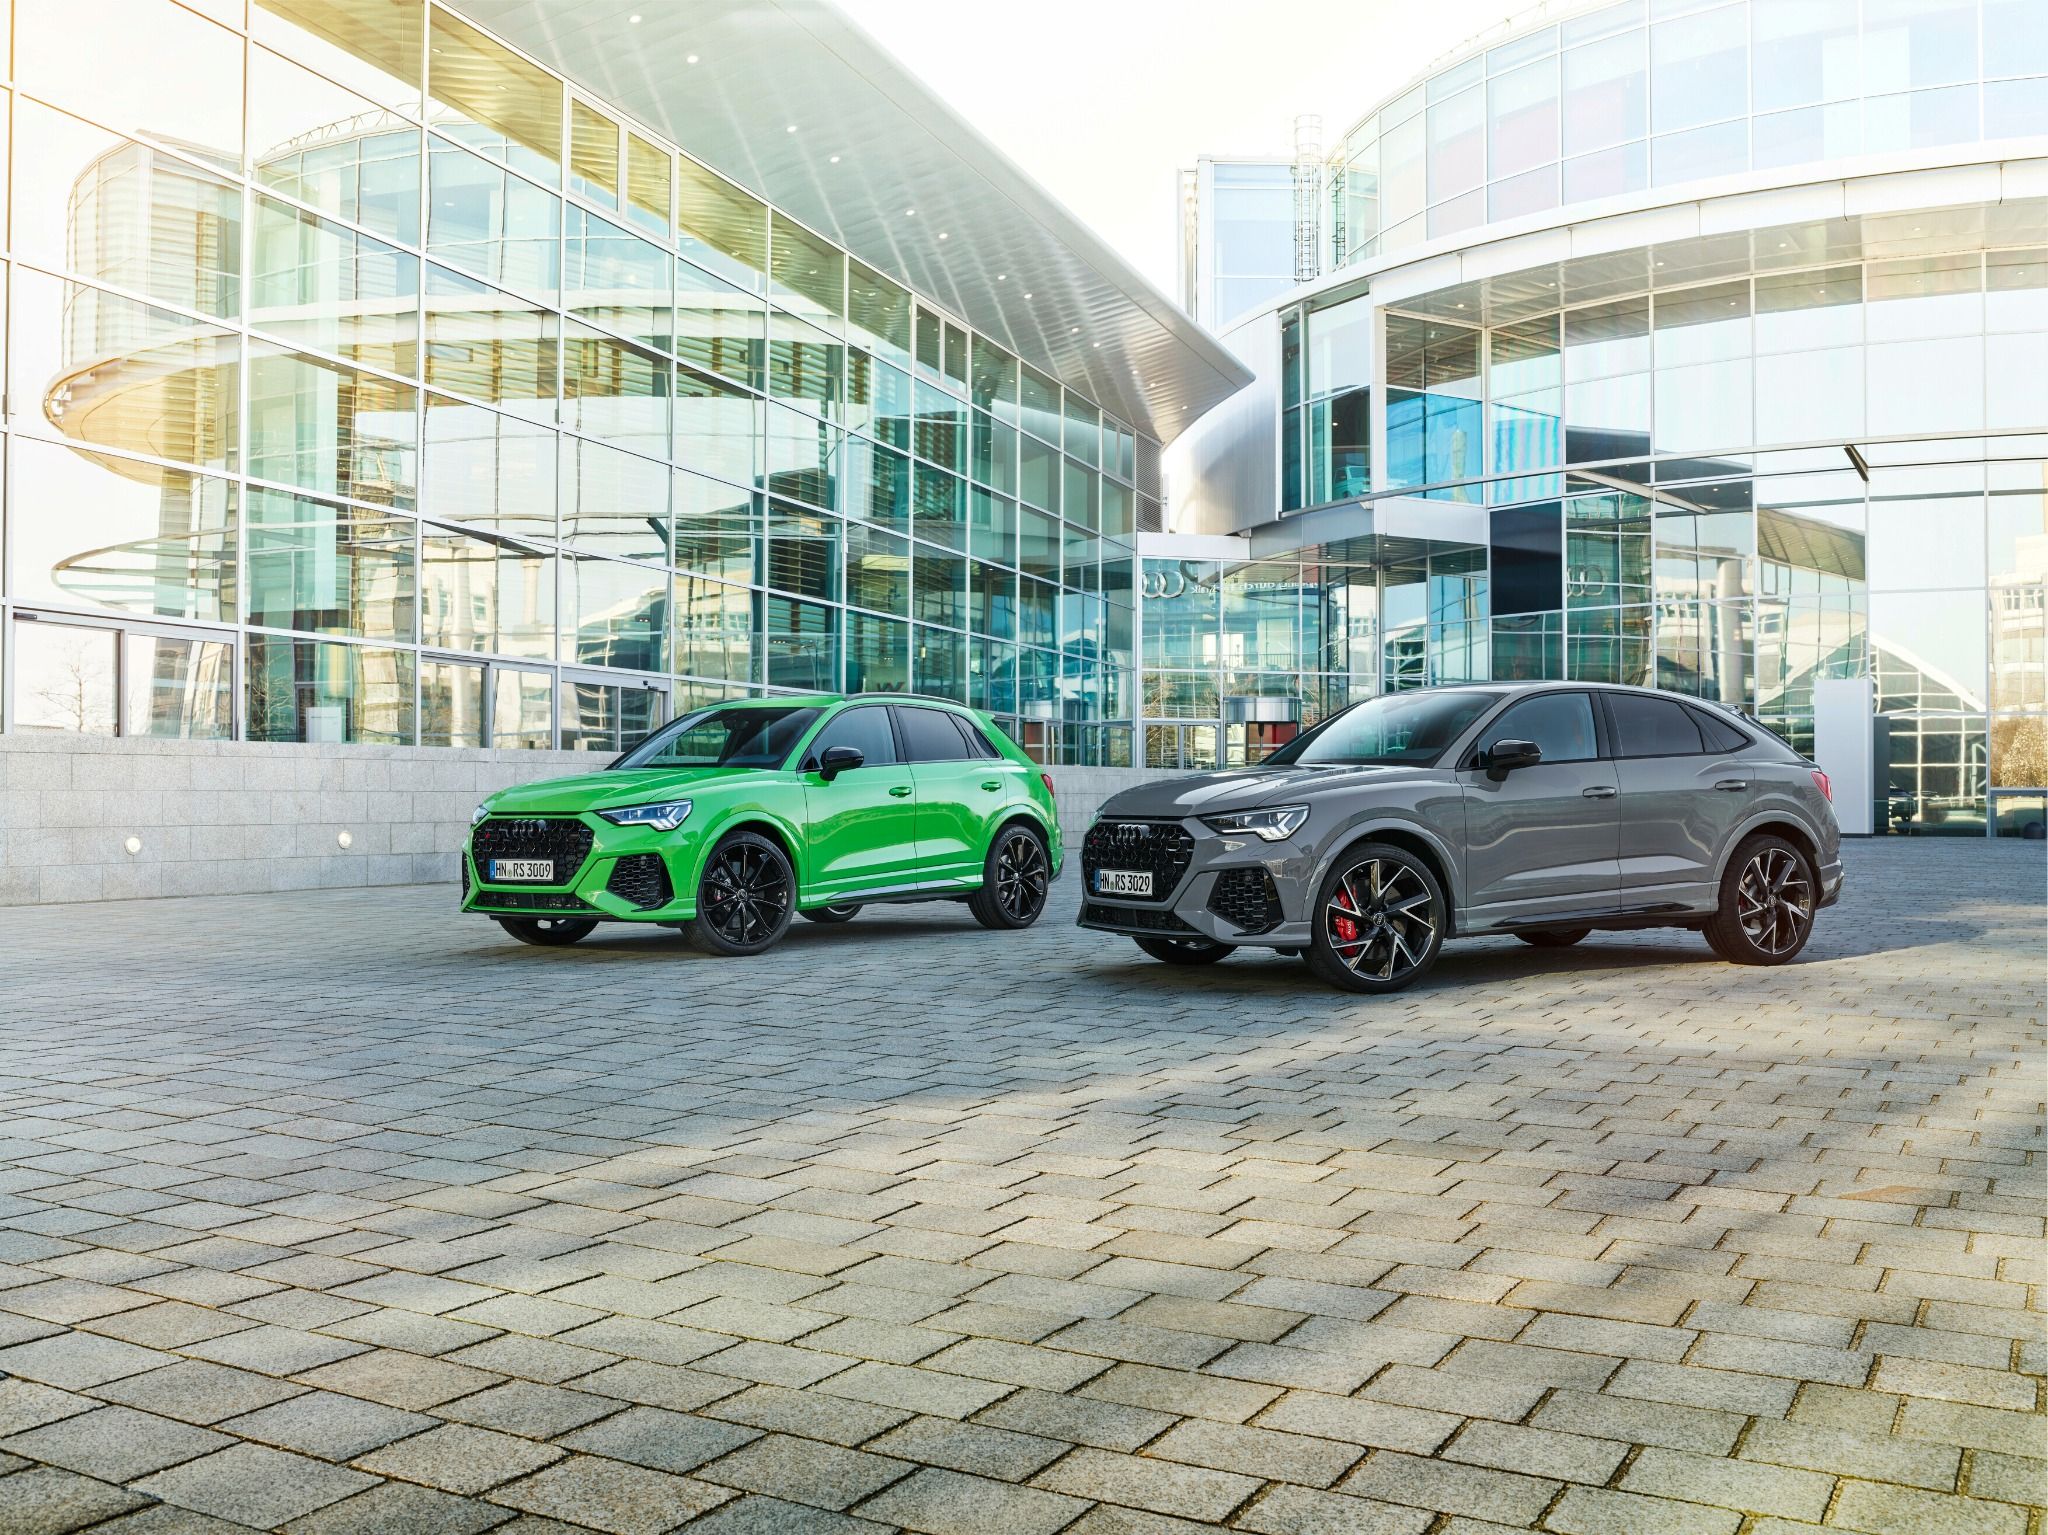 Audi RS Q3 and RS Q3 Sportback